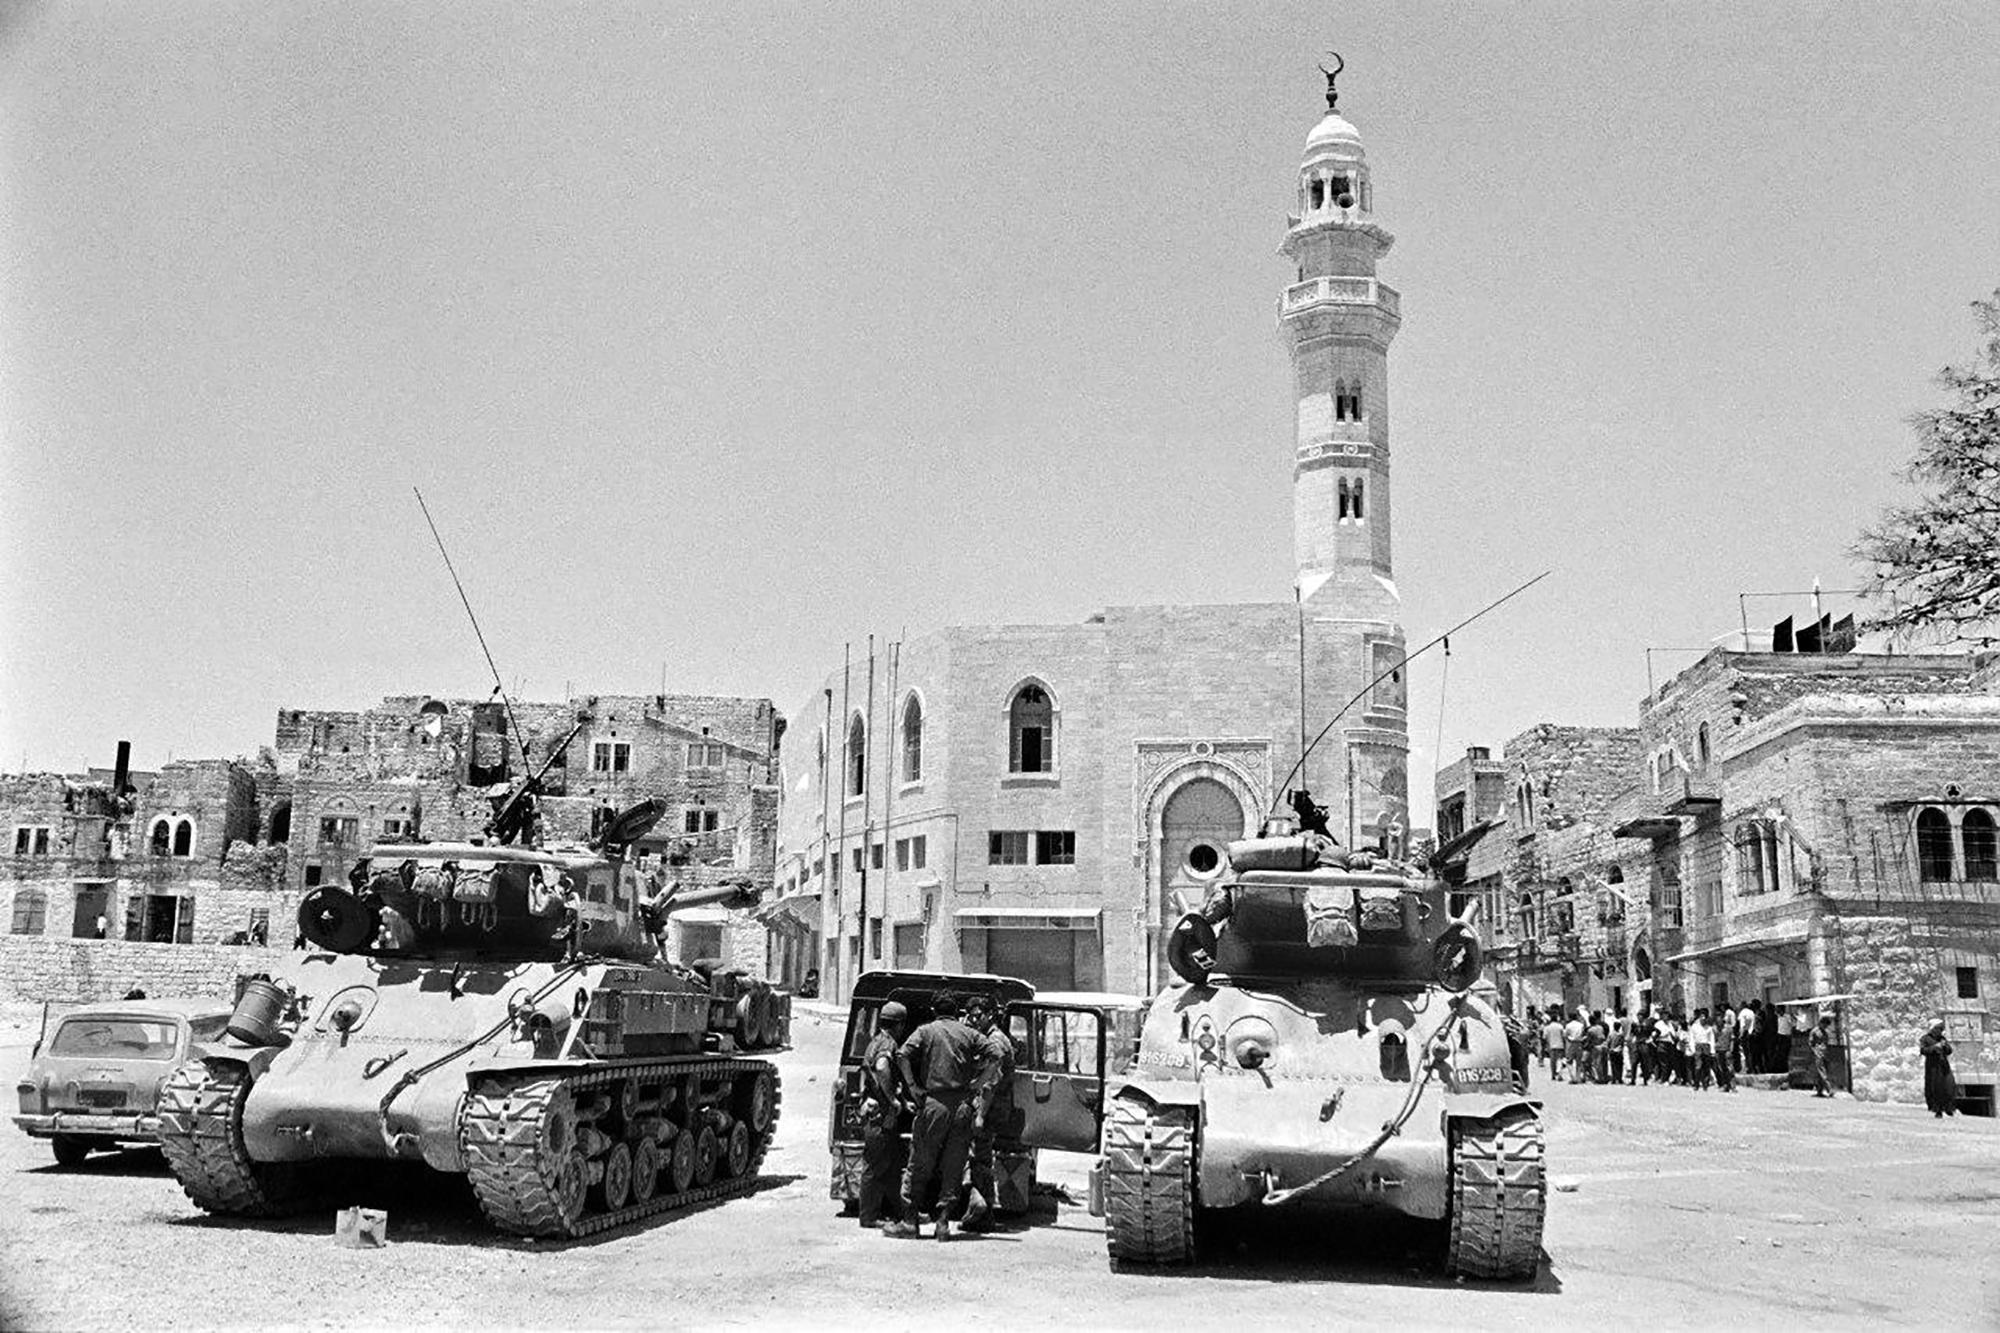 Dos tanques israelíes posicionados en una de las plazas de la ciudad palestina de Belén. La imagen se tomó el 10 de junio de 1967, durante la llamada Guerra de los Seis Días, que dio inicio a la ocupación militar de Cisjordania (incluida Jerusalén Este), que sigue vigente más de medio siglo después. Foto Pierre Guillaud (AFP).